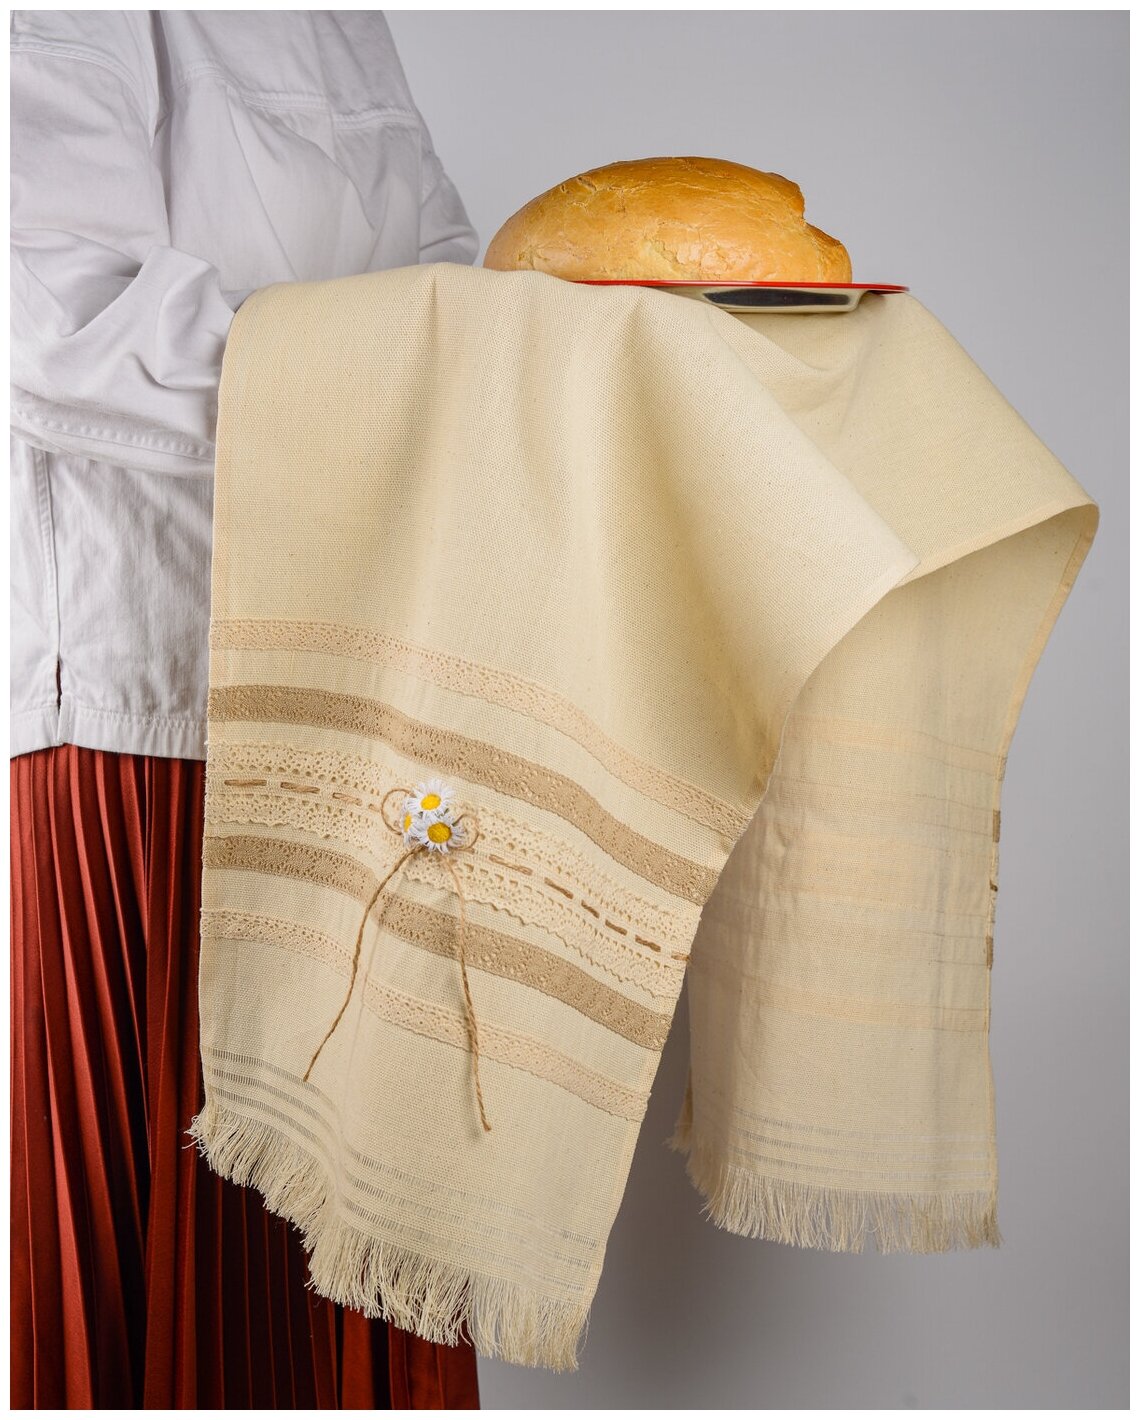 Свадебный рушник для молодоженов в эко-стиле "Рустикальная свадьба" из бежевого льна с вязаным кружевом, ромашками и тесьмой из бечевки